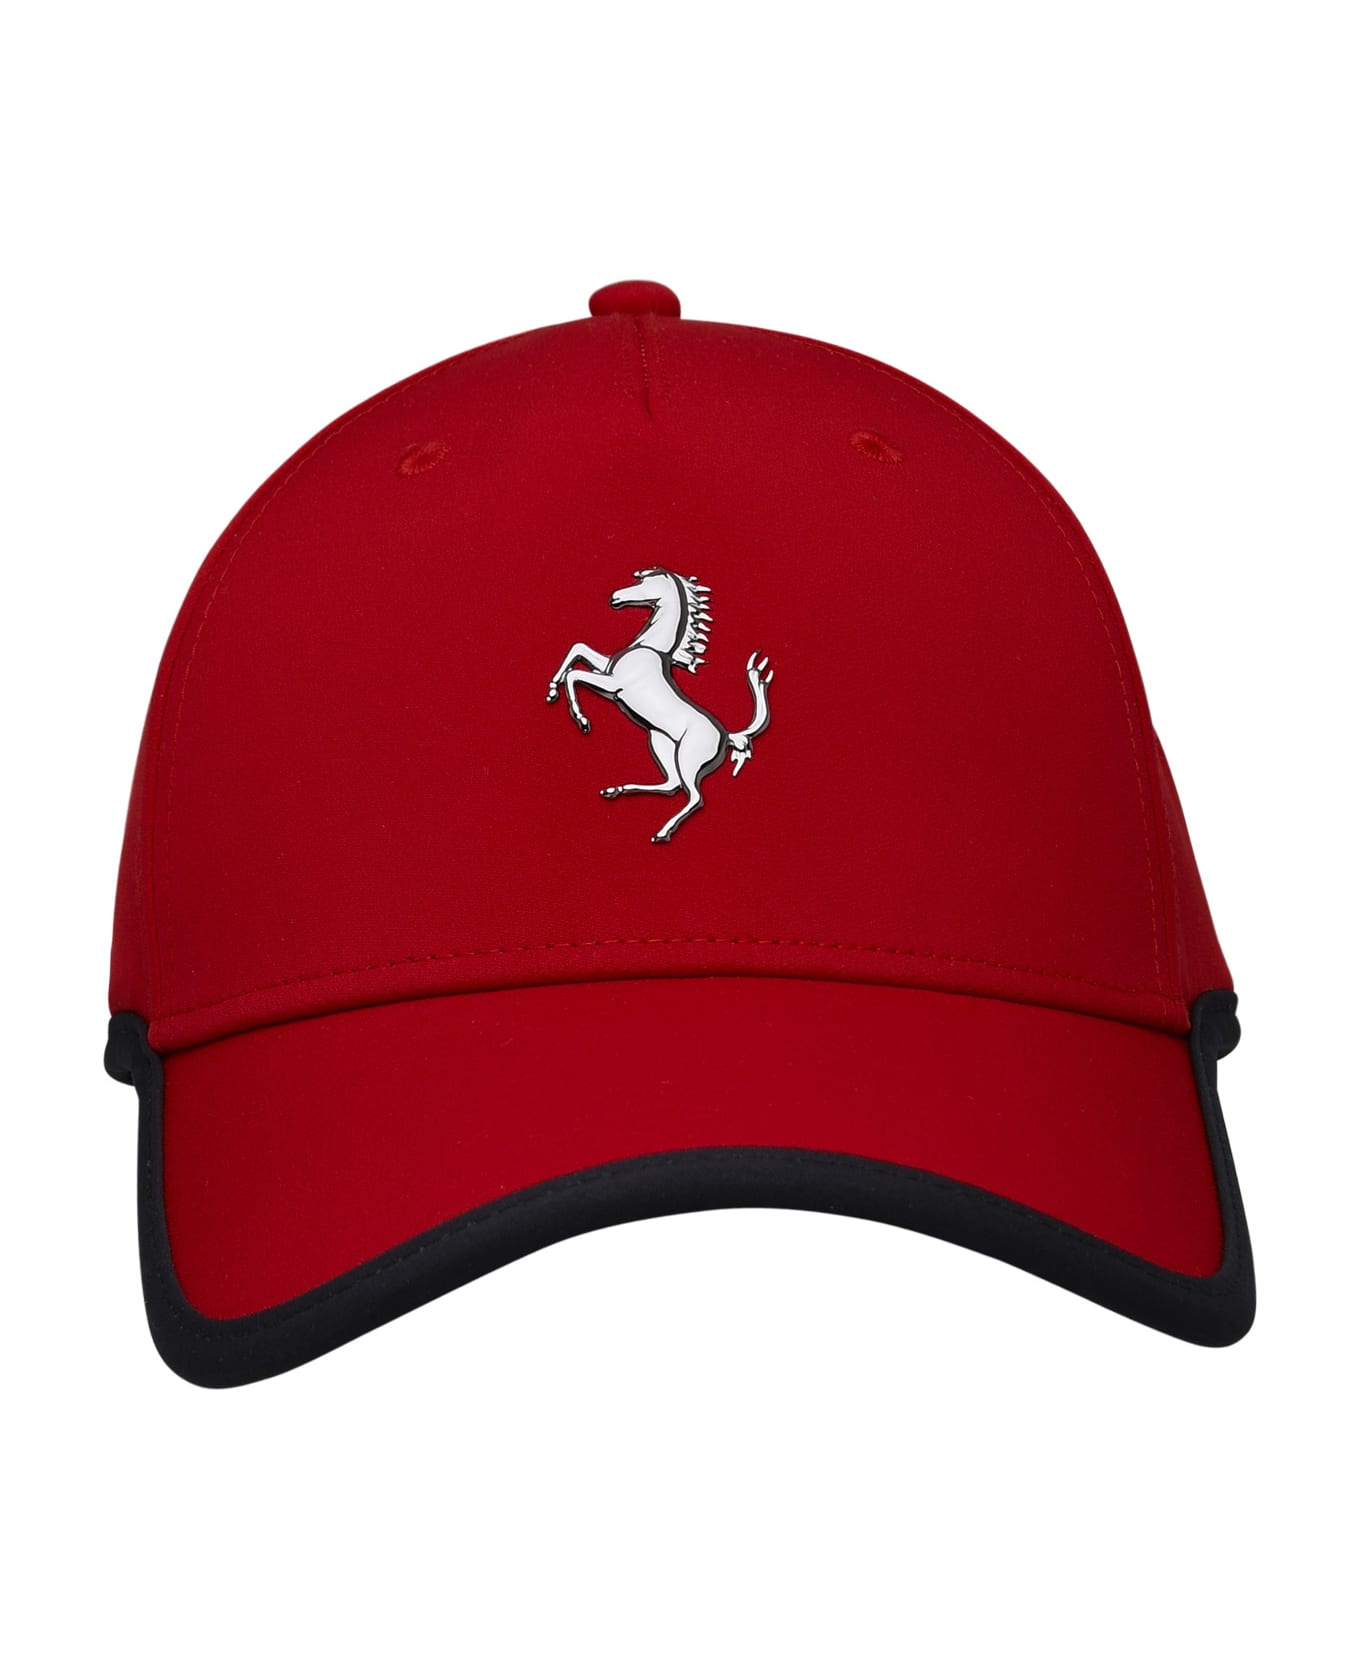 Ferrari Red Nylon Cap - Red